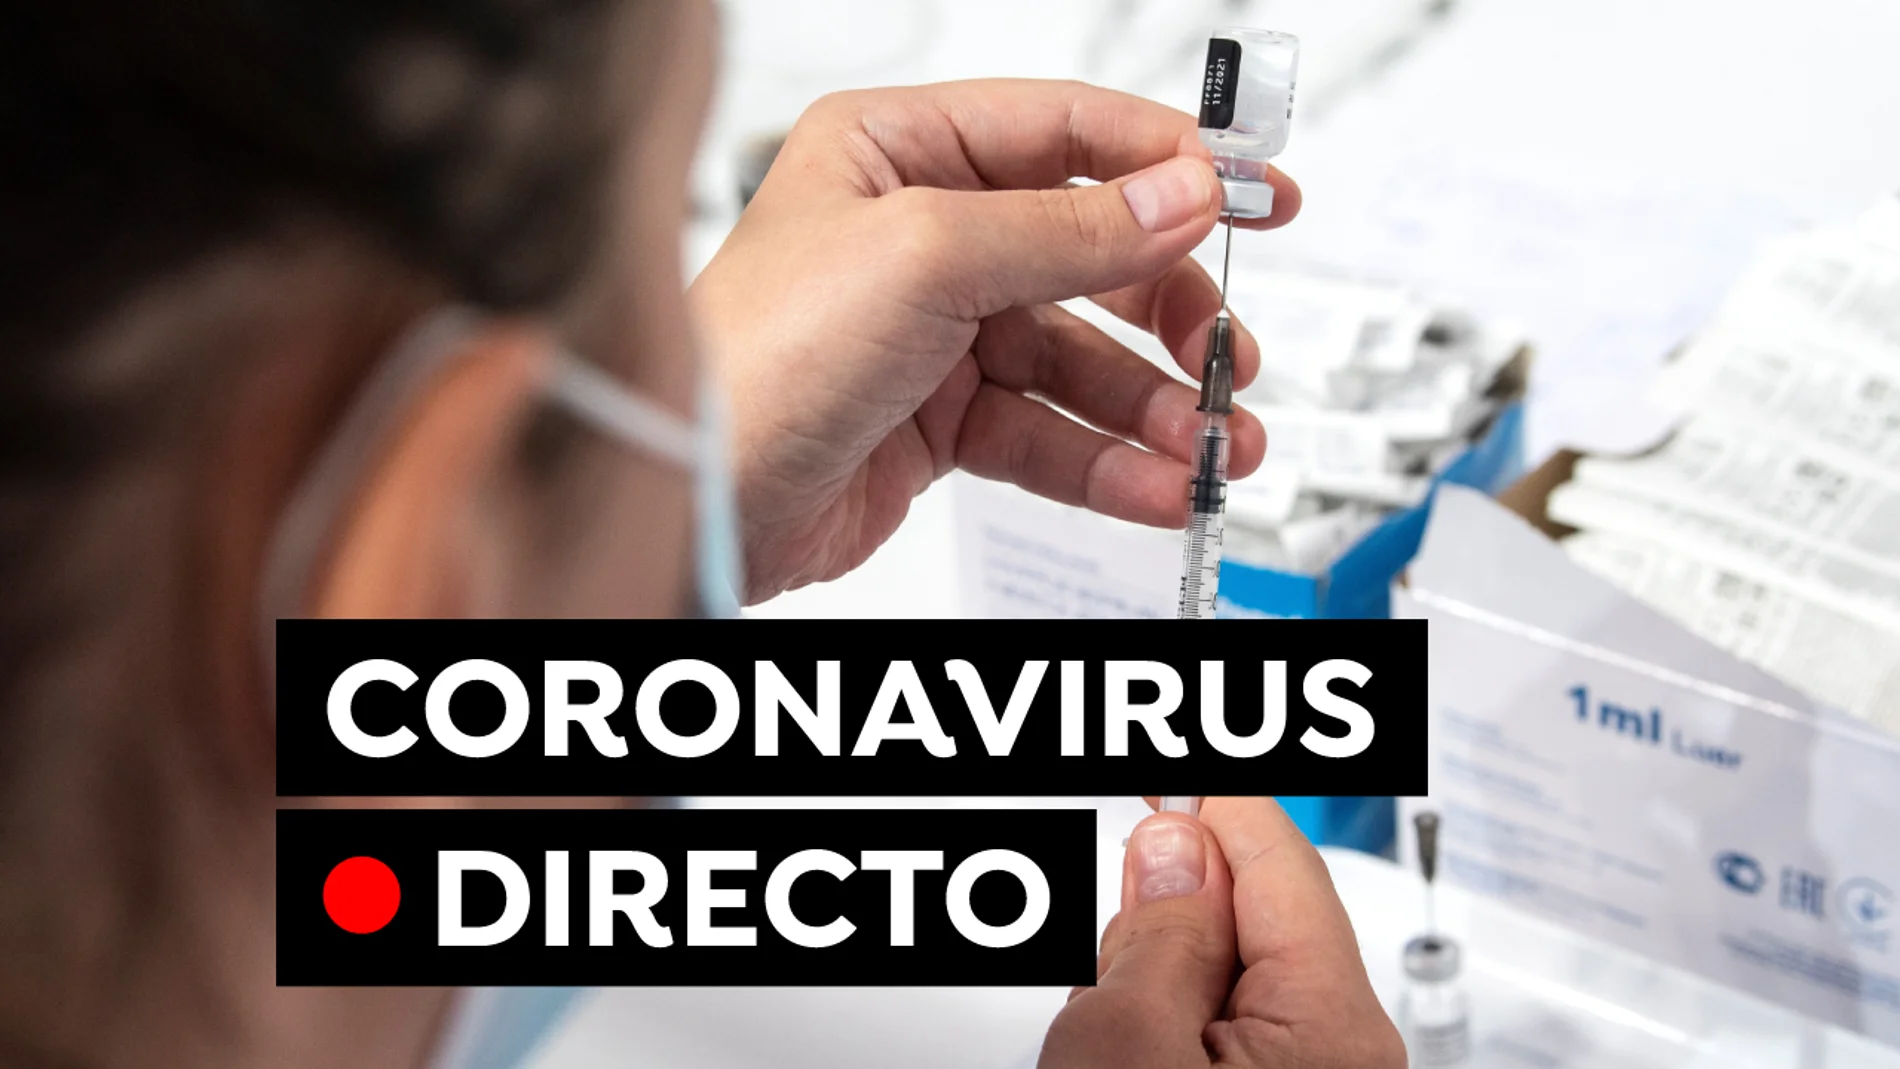 Coronavirus España: Última hora de la vacuna contra el COVID-19 y restricciones, en directo